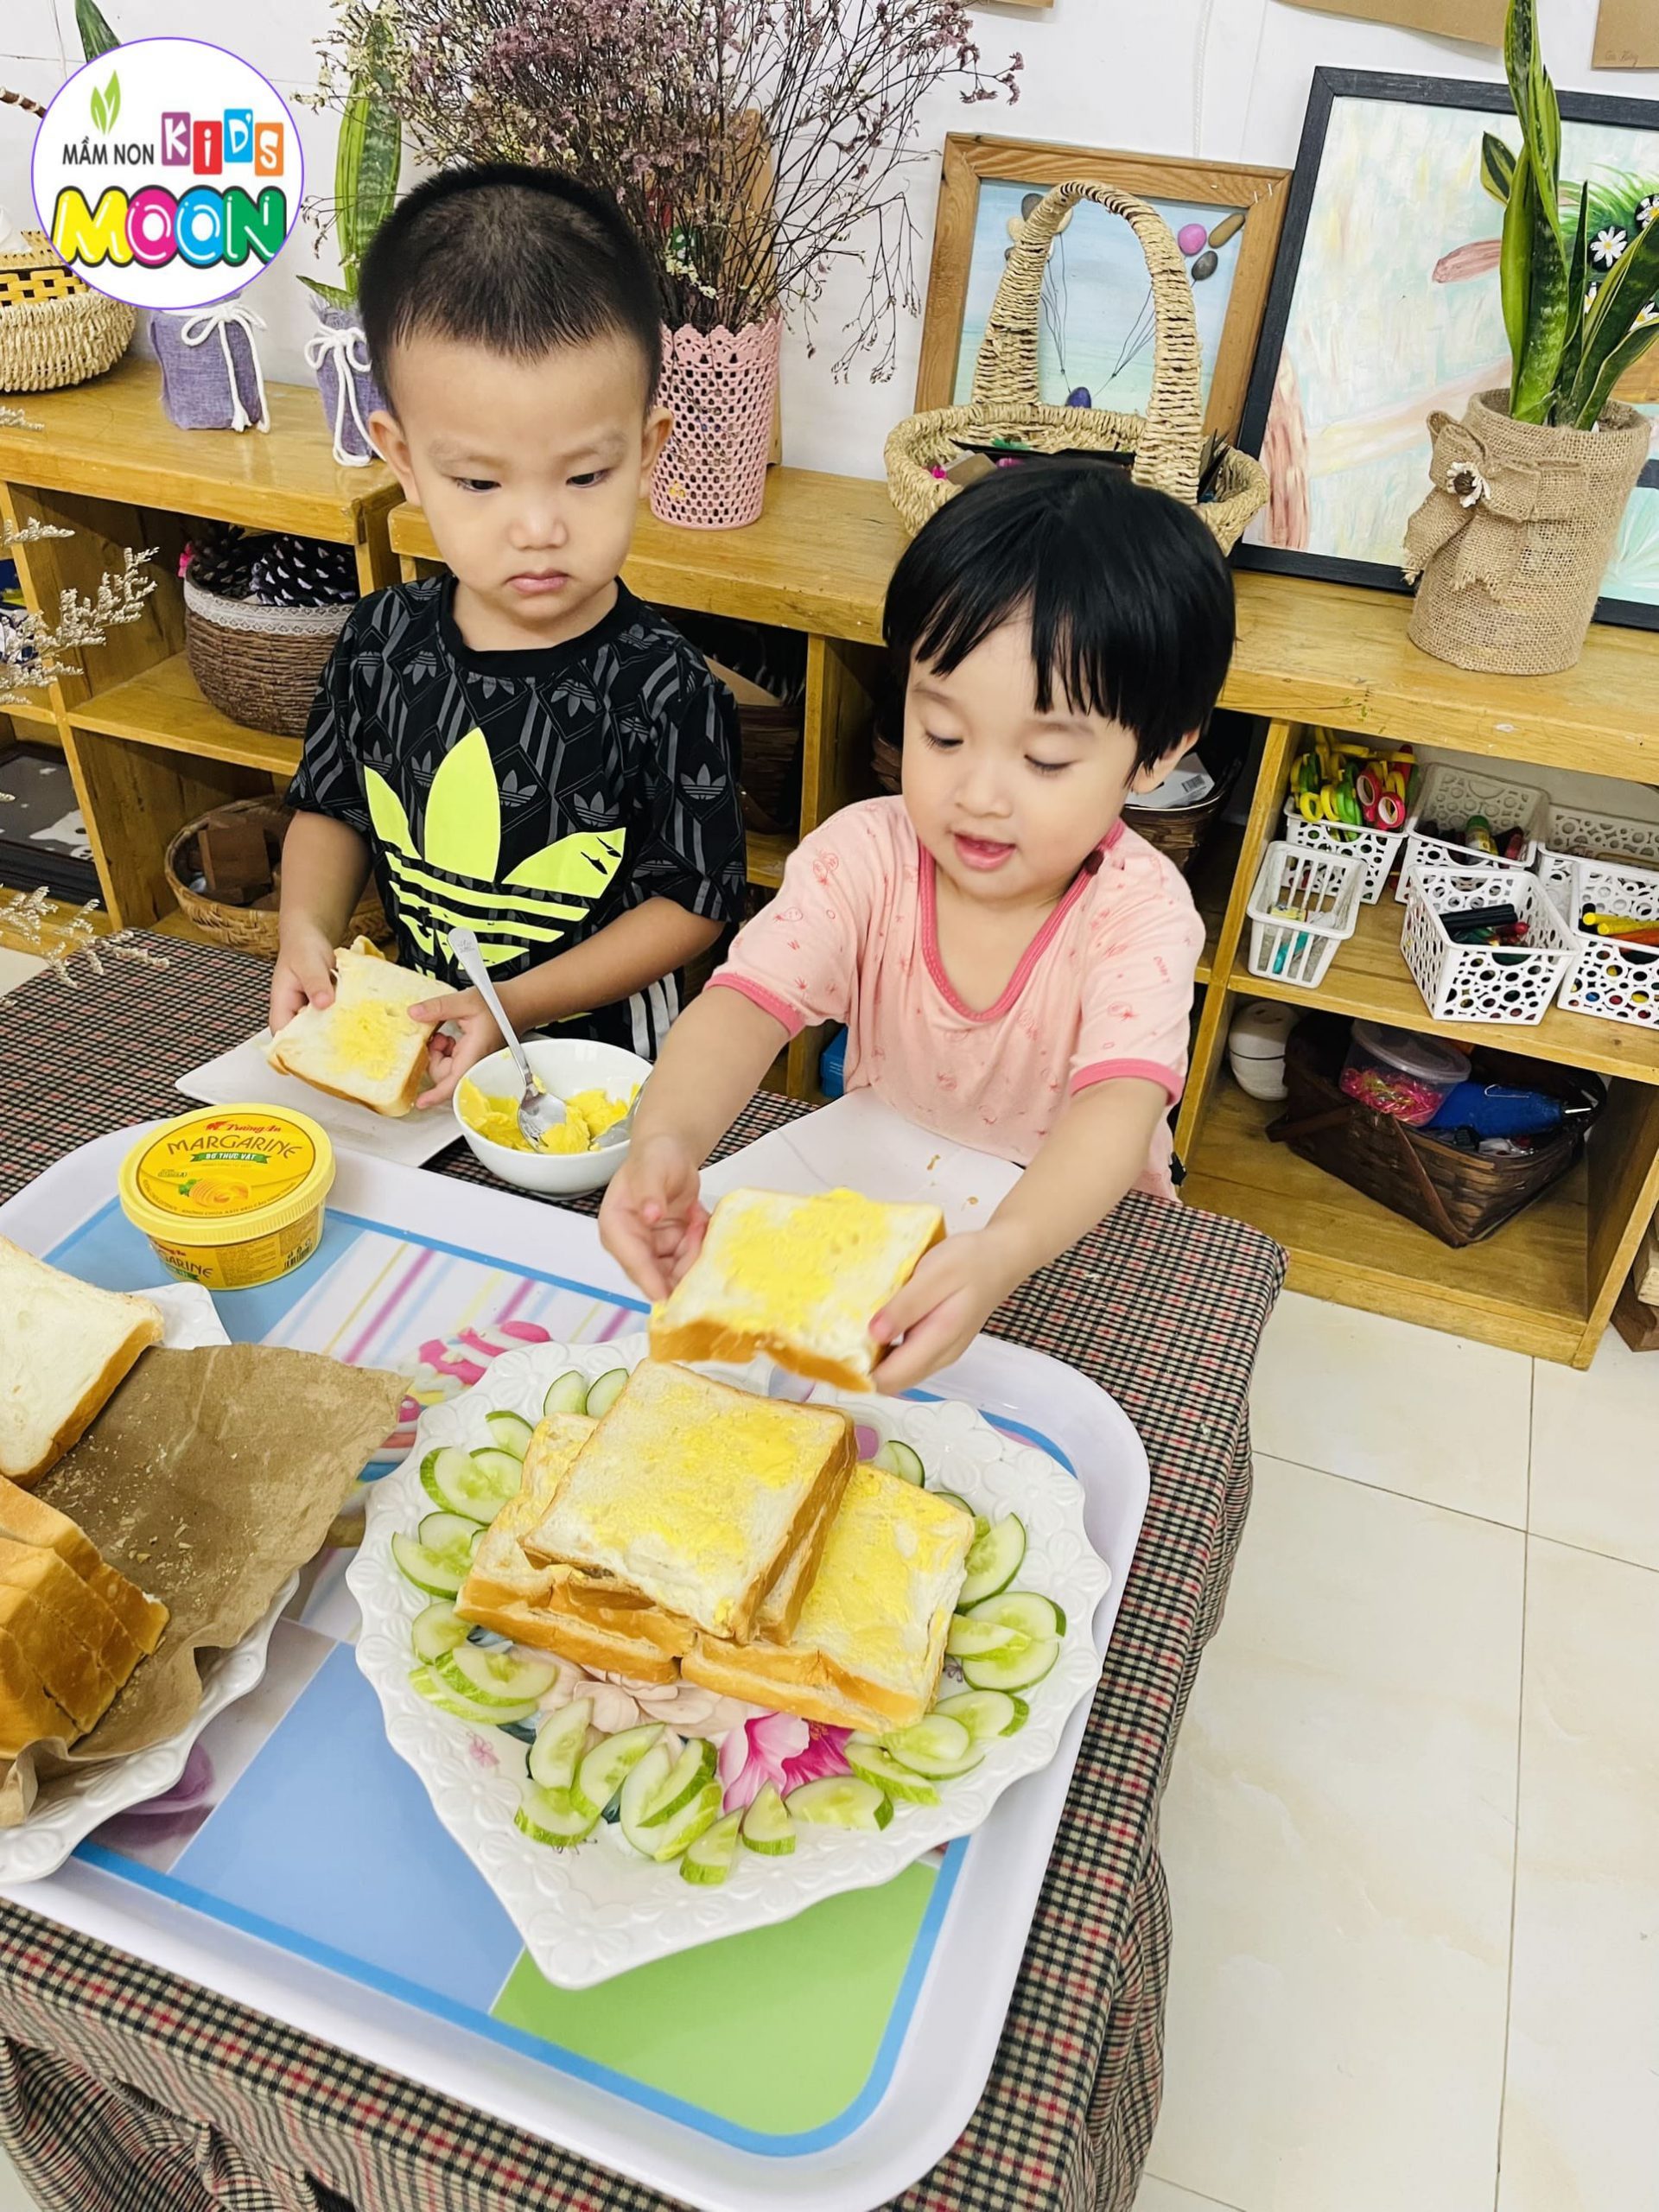 Cooking Cùng Lớp Yellow Moon Làm Món Bánh Sandwich - Mầm Non Kid's Moon